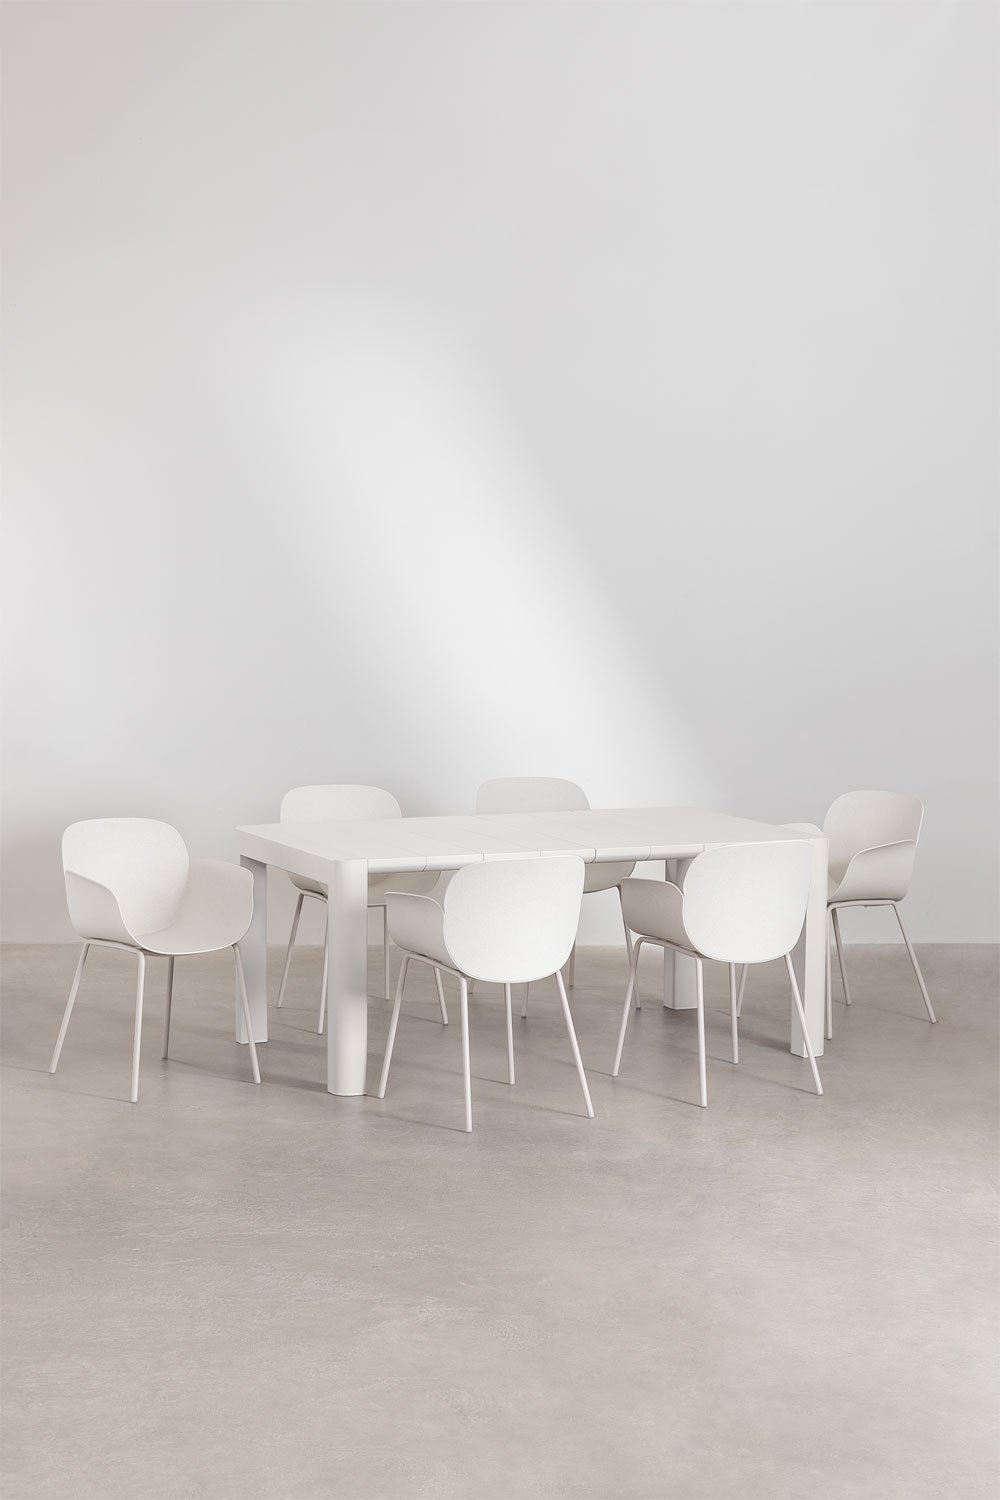 Arnadine rechthoekige tafelset (180x100 cm) en 6 Lynette eetkamerstoelen, galerij beeld 1